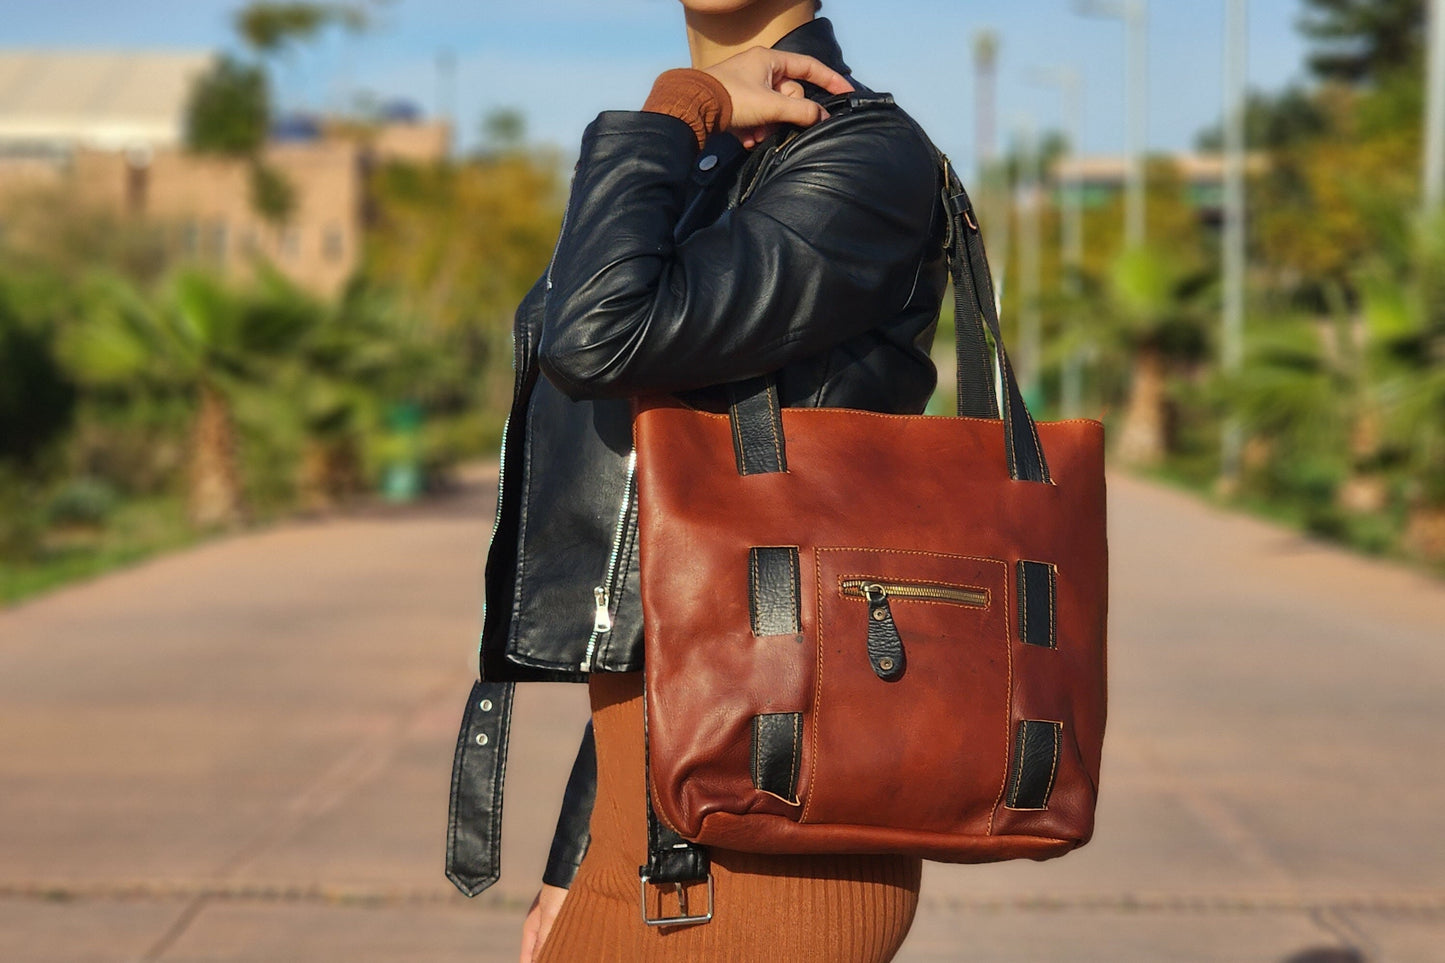 Chic Leather Shoulder Tote Bag with Elegant Black Handles